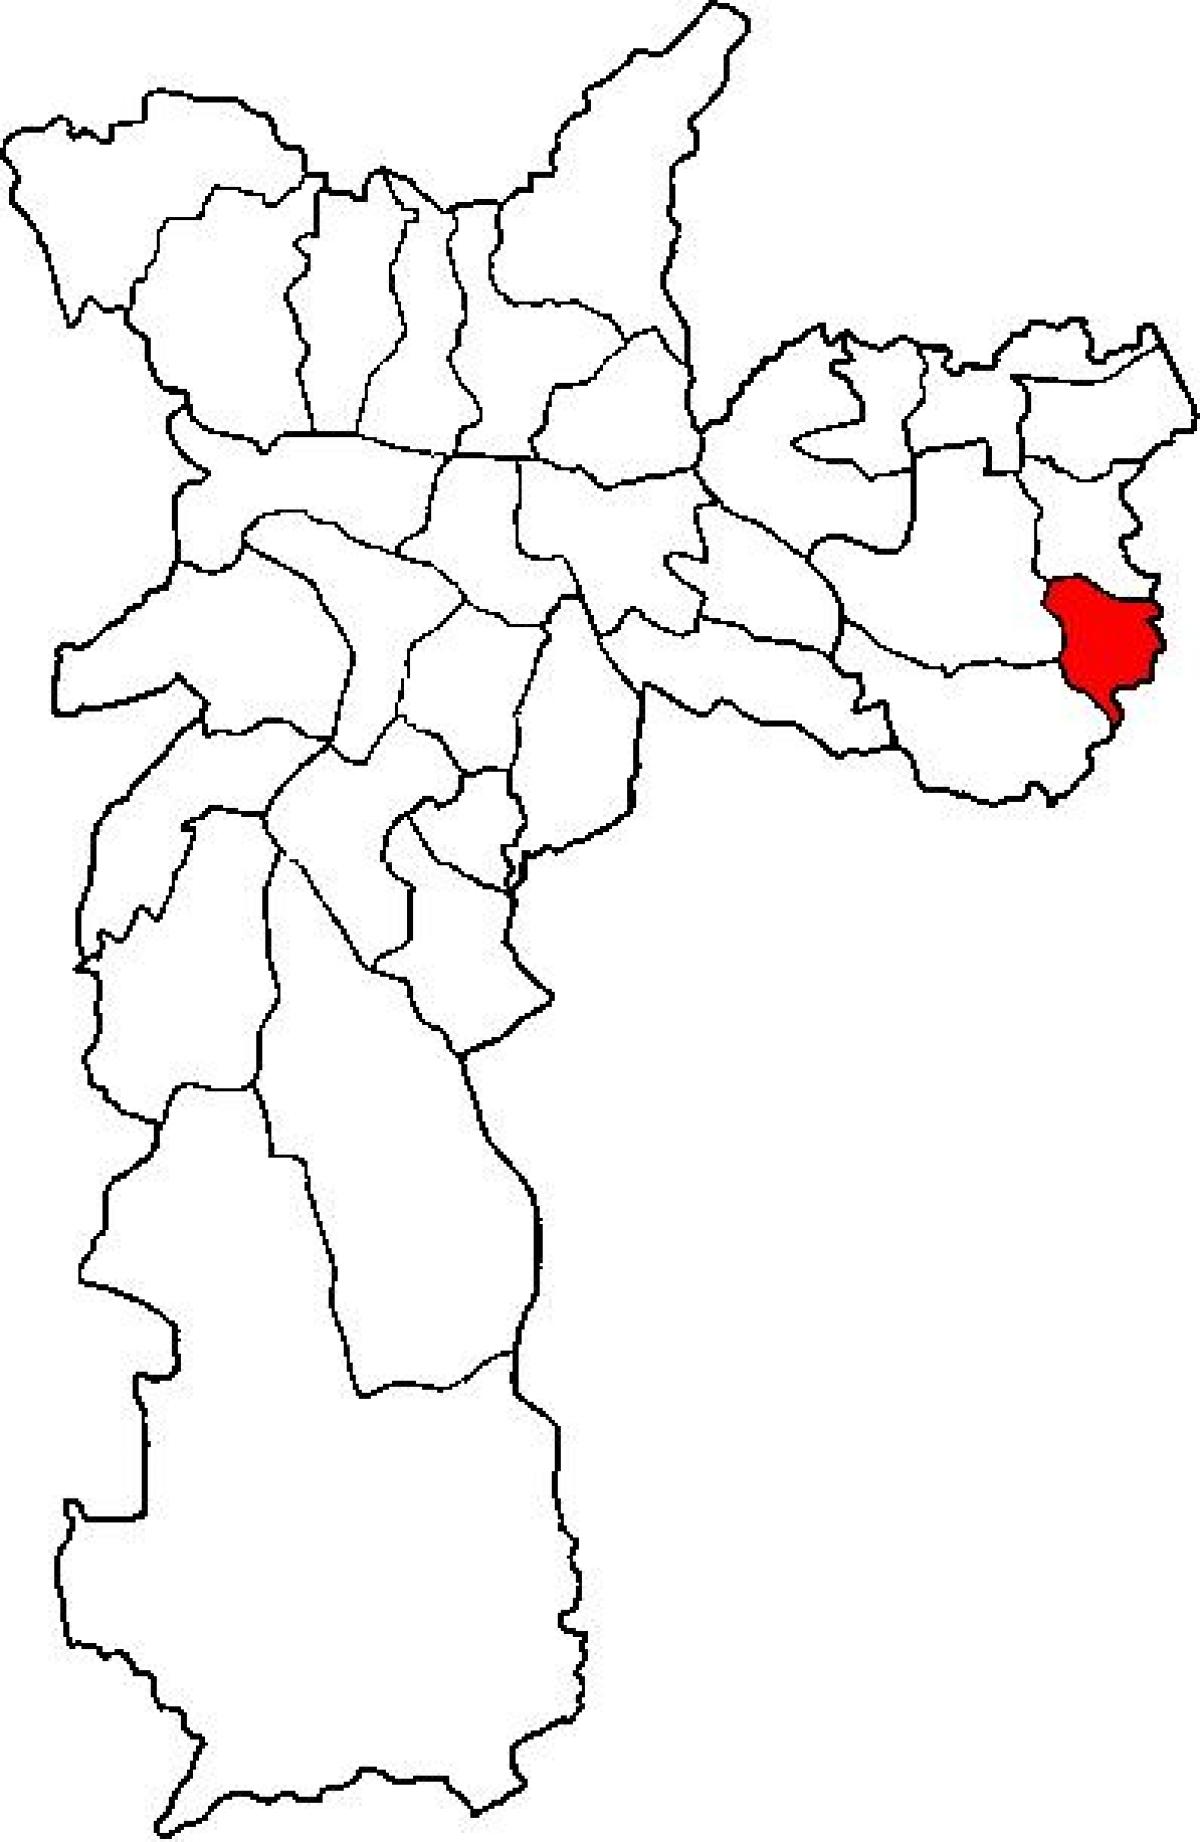 Карта Сидаде Тирадентесе суб-префектура Сан-Паулу